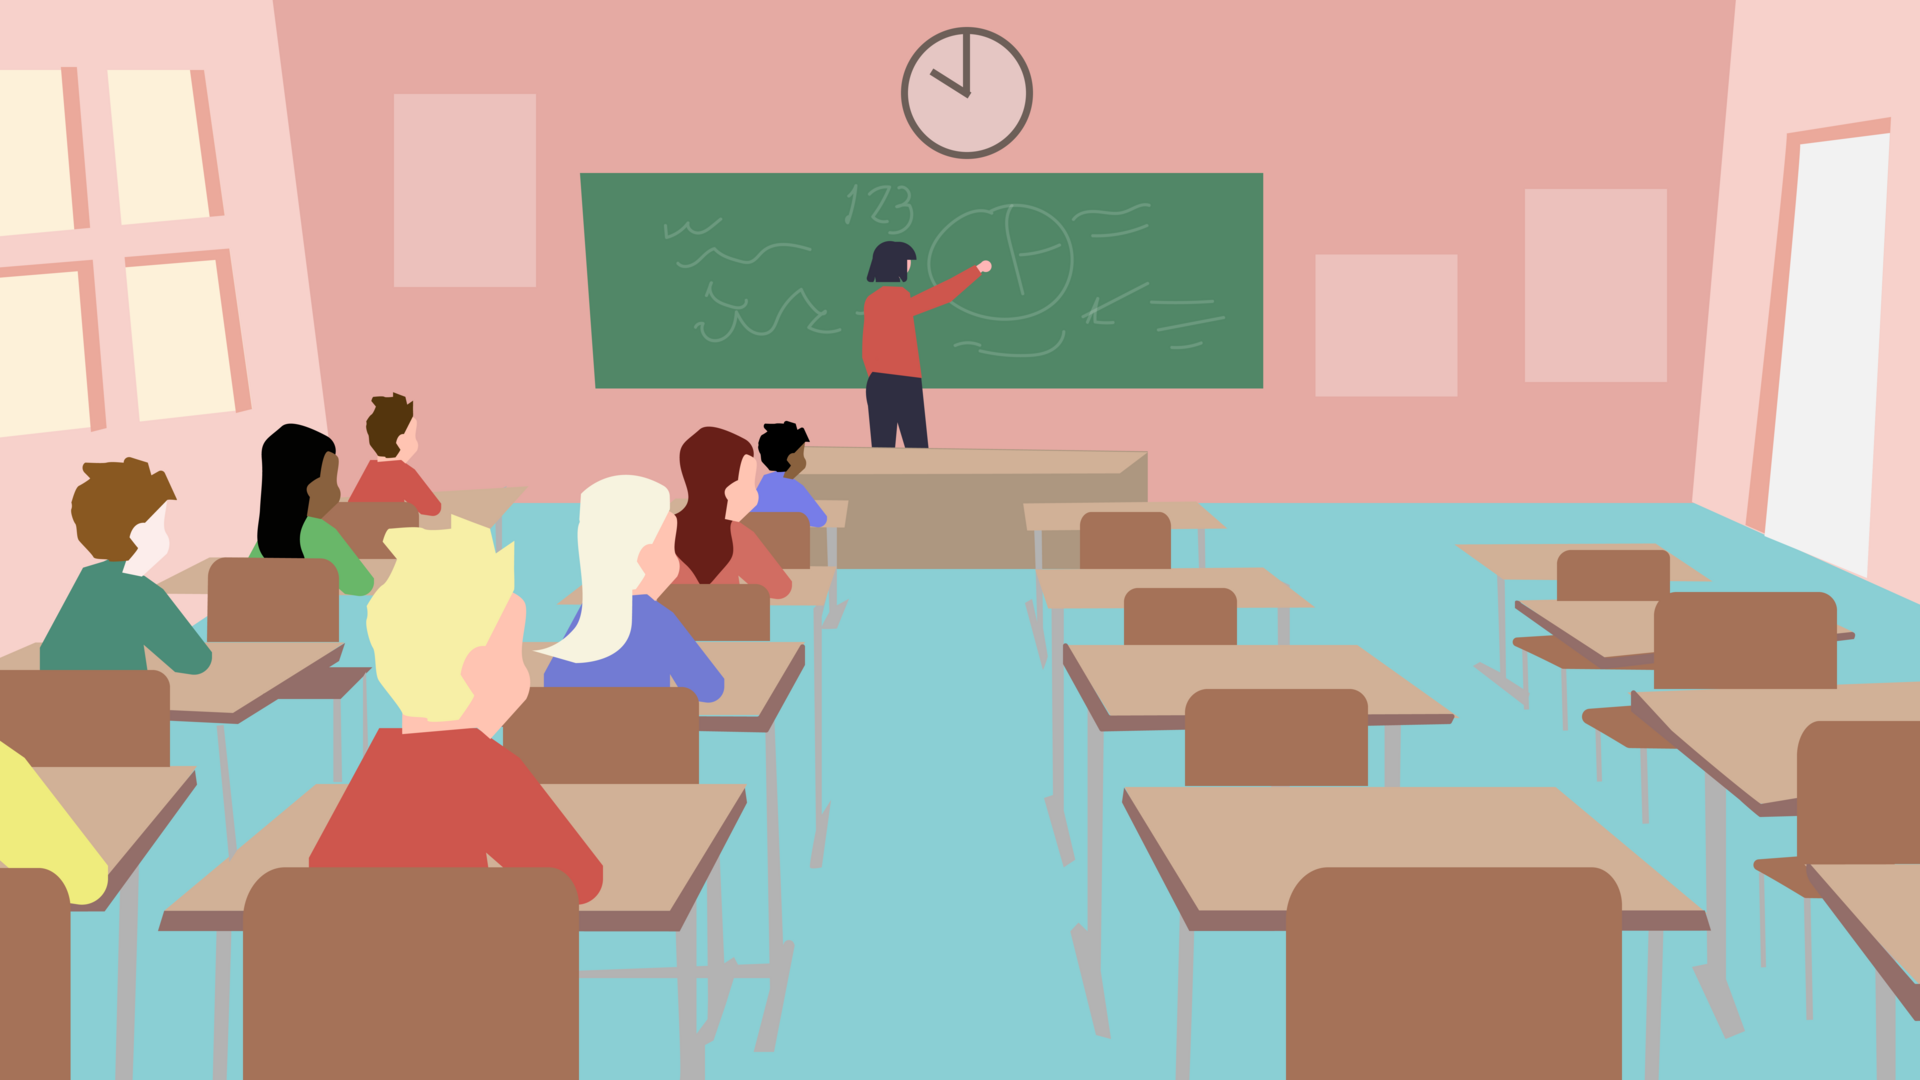 Tegnet illustrasjonsbilde som viser et klasserom. Lærer, elever og tavle. Halvparten av pultene og stolene i klasserommet står tomme. 